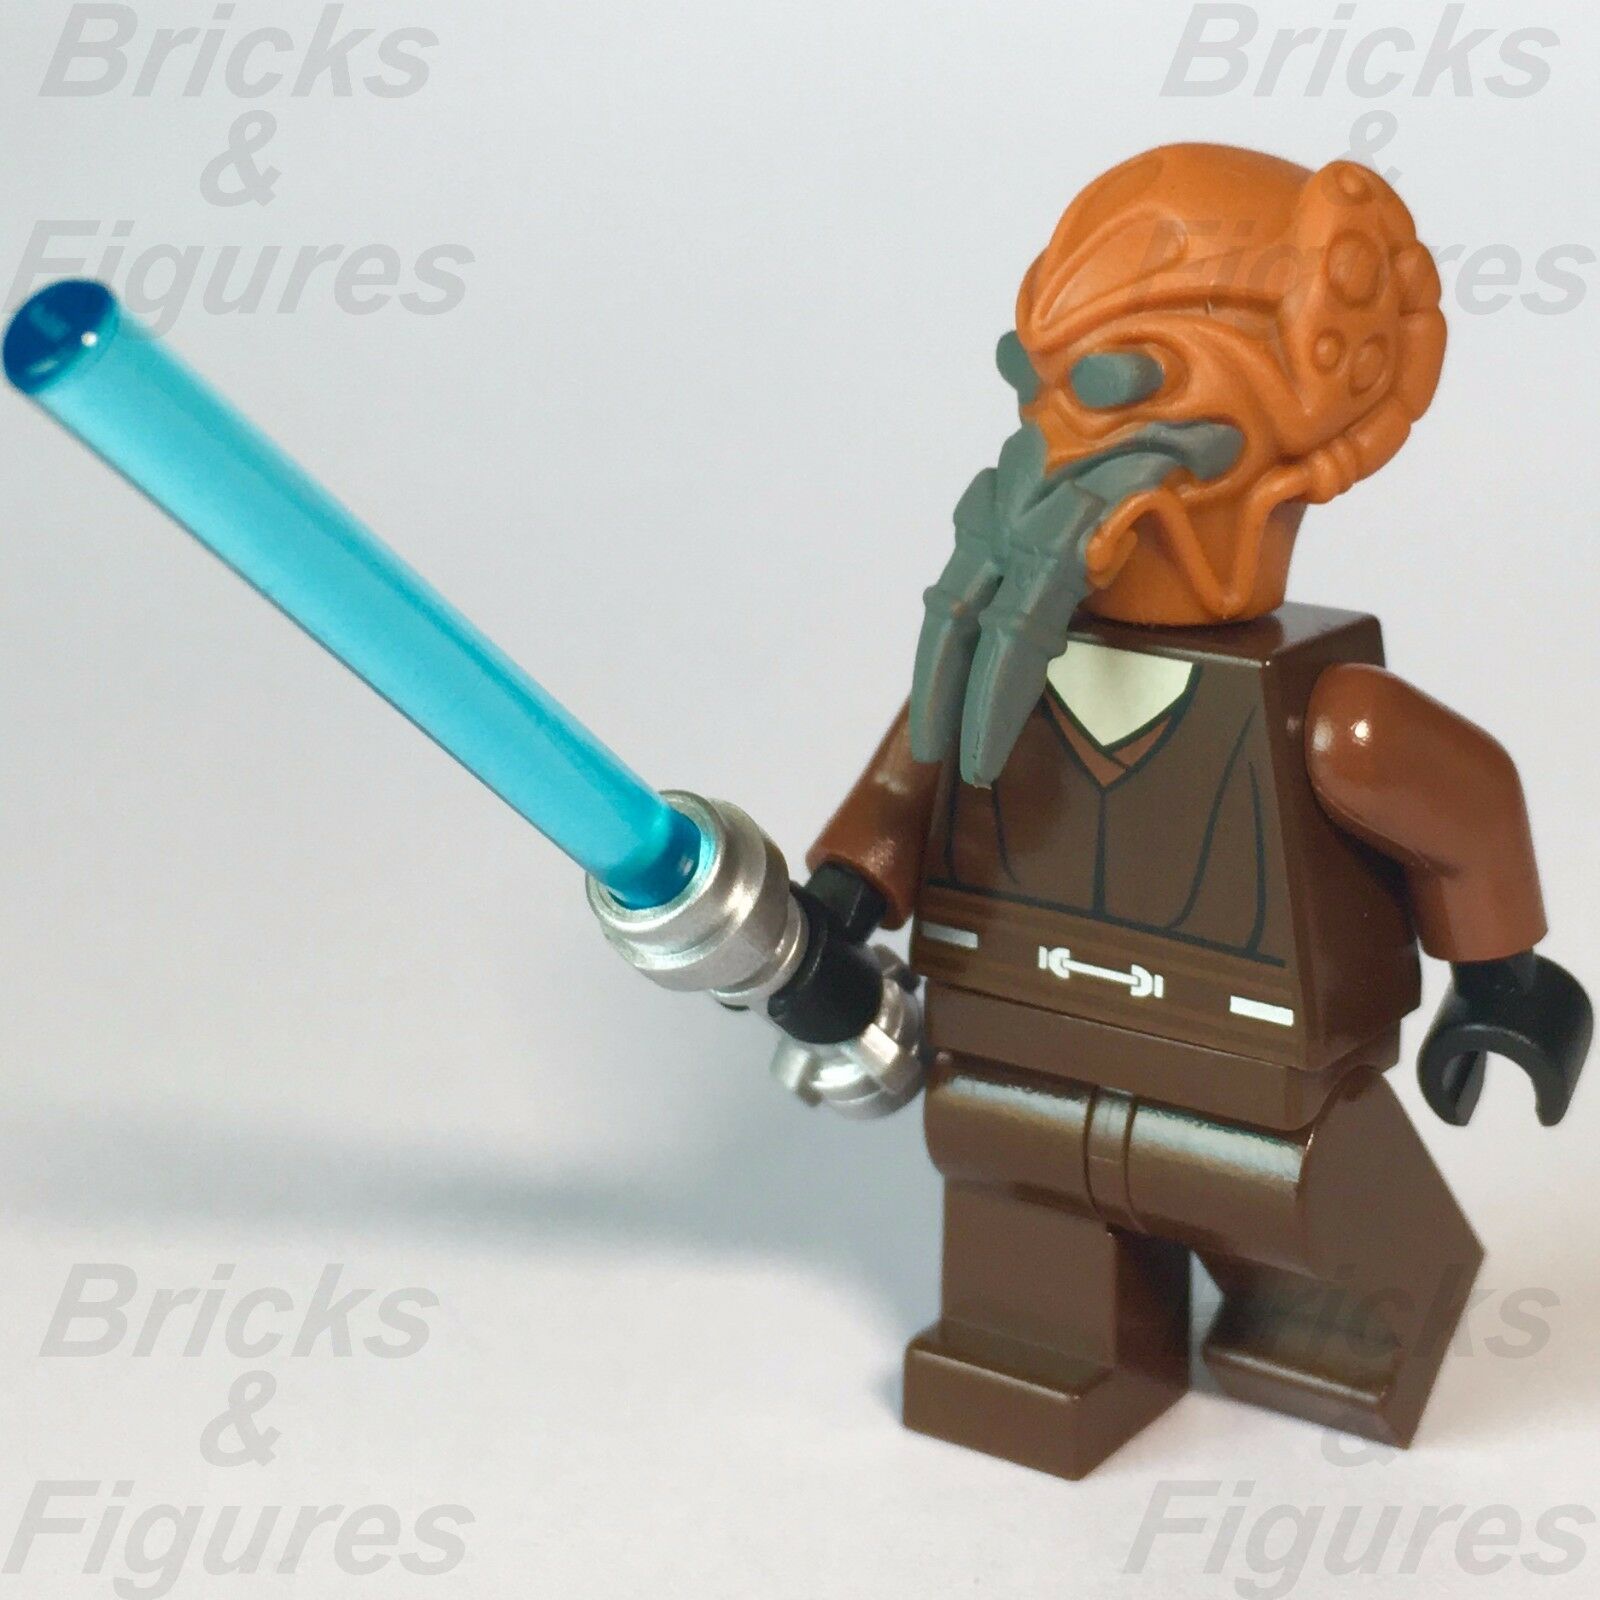 New Star Wars LEGO Plo Koon Jedi Master Clone War General Minifigure 8093 7676 - Bricks & Figures